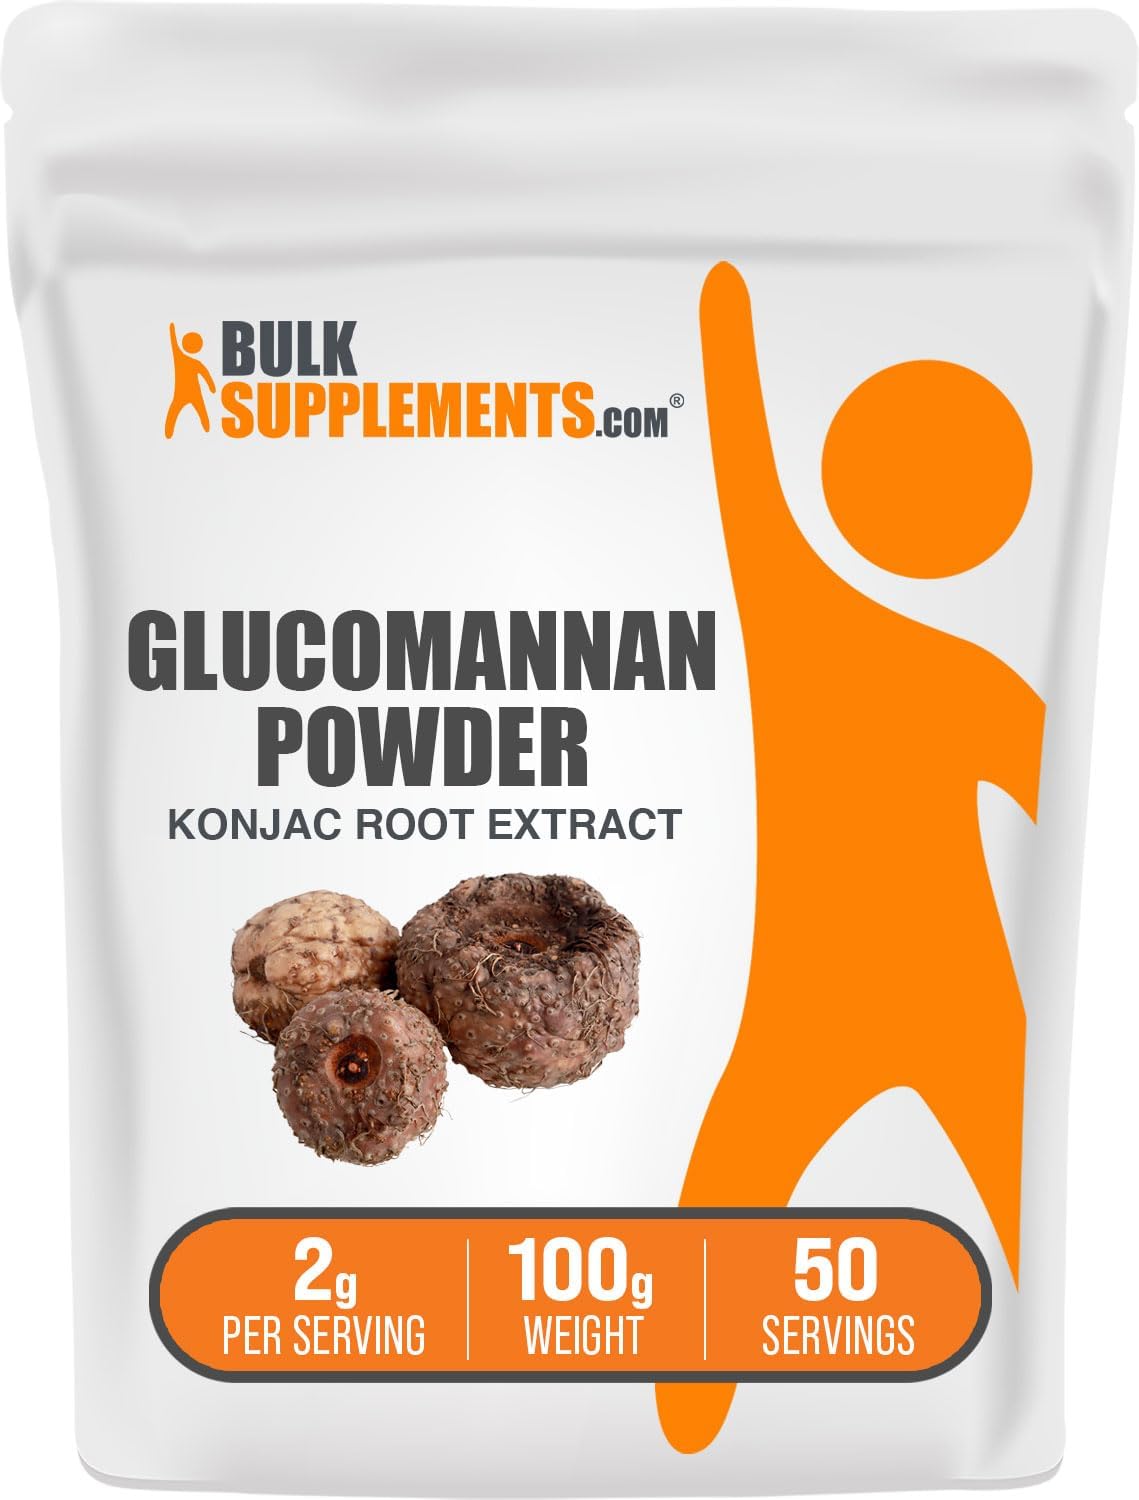 BULKSUPPLEMENTS.COM Glucomannan Powder - Konjac Root Extract Powder, Fiber Supplement Powder, Konjac Powder - Soluble Fiber Supplements, Gluten Free, 2g per Serving, 100g (3.5 oz)